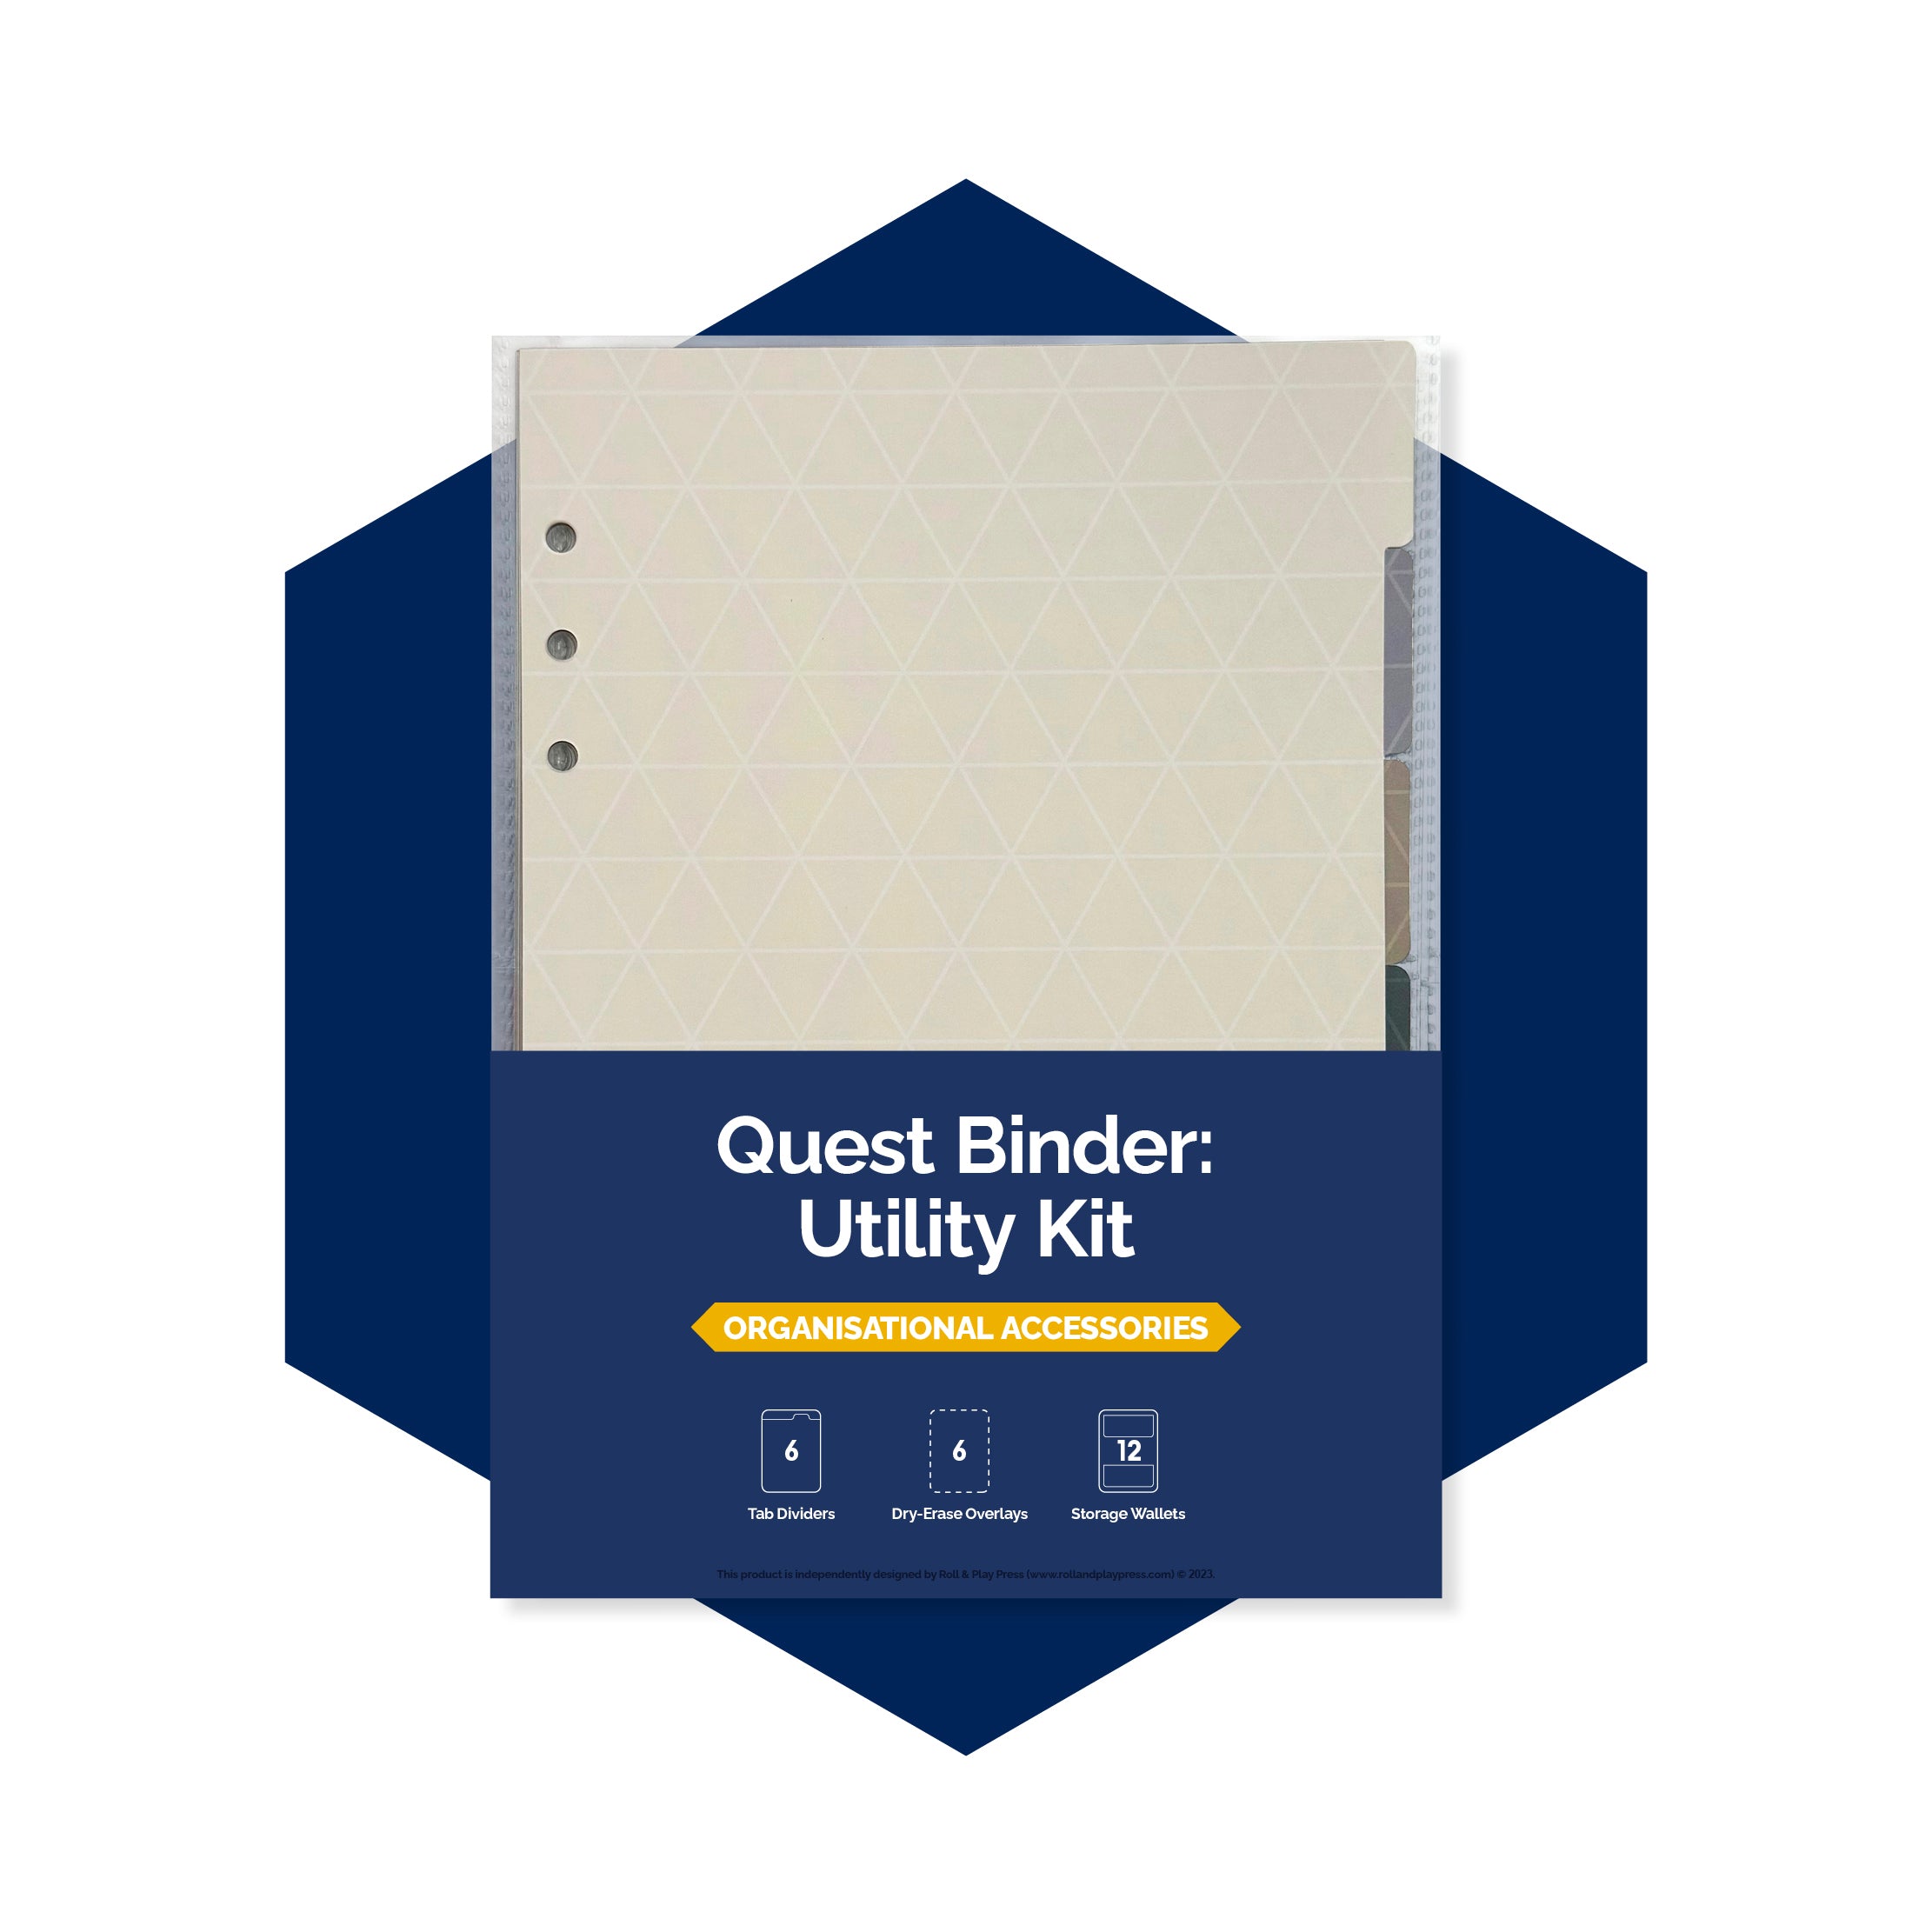 Utility Kit